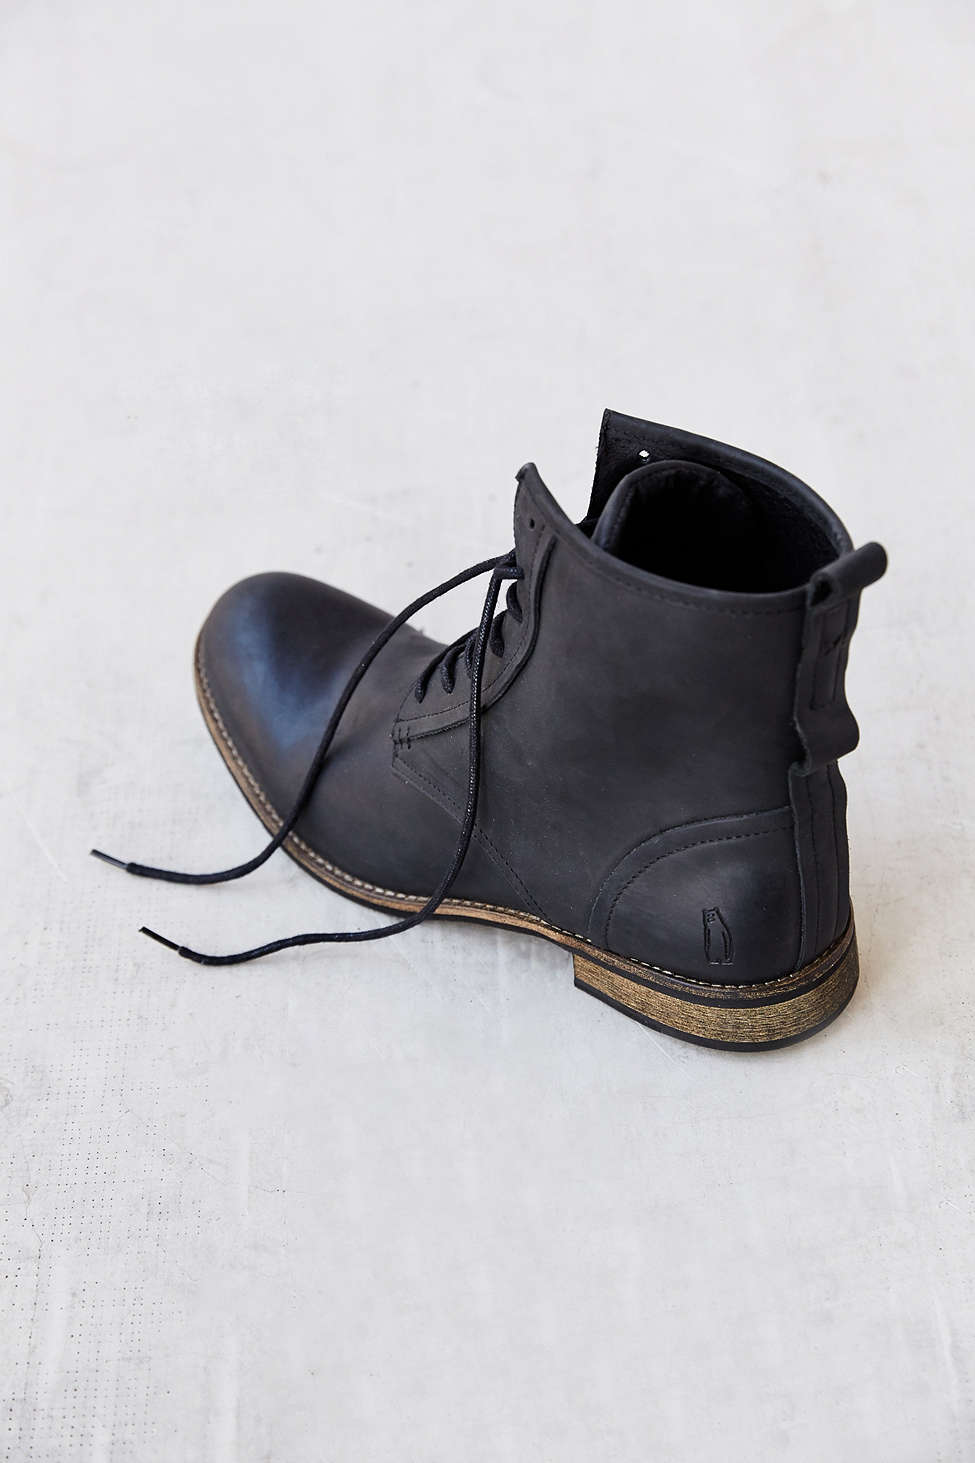 Walker Boot in Black Shoe the Bear 1